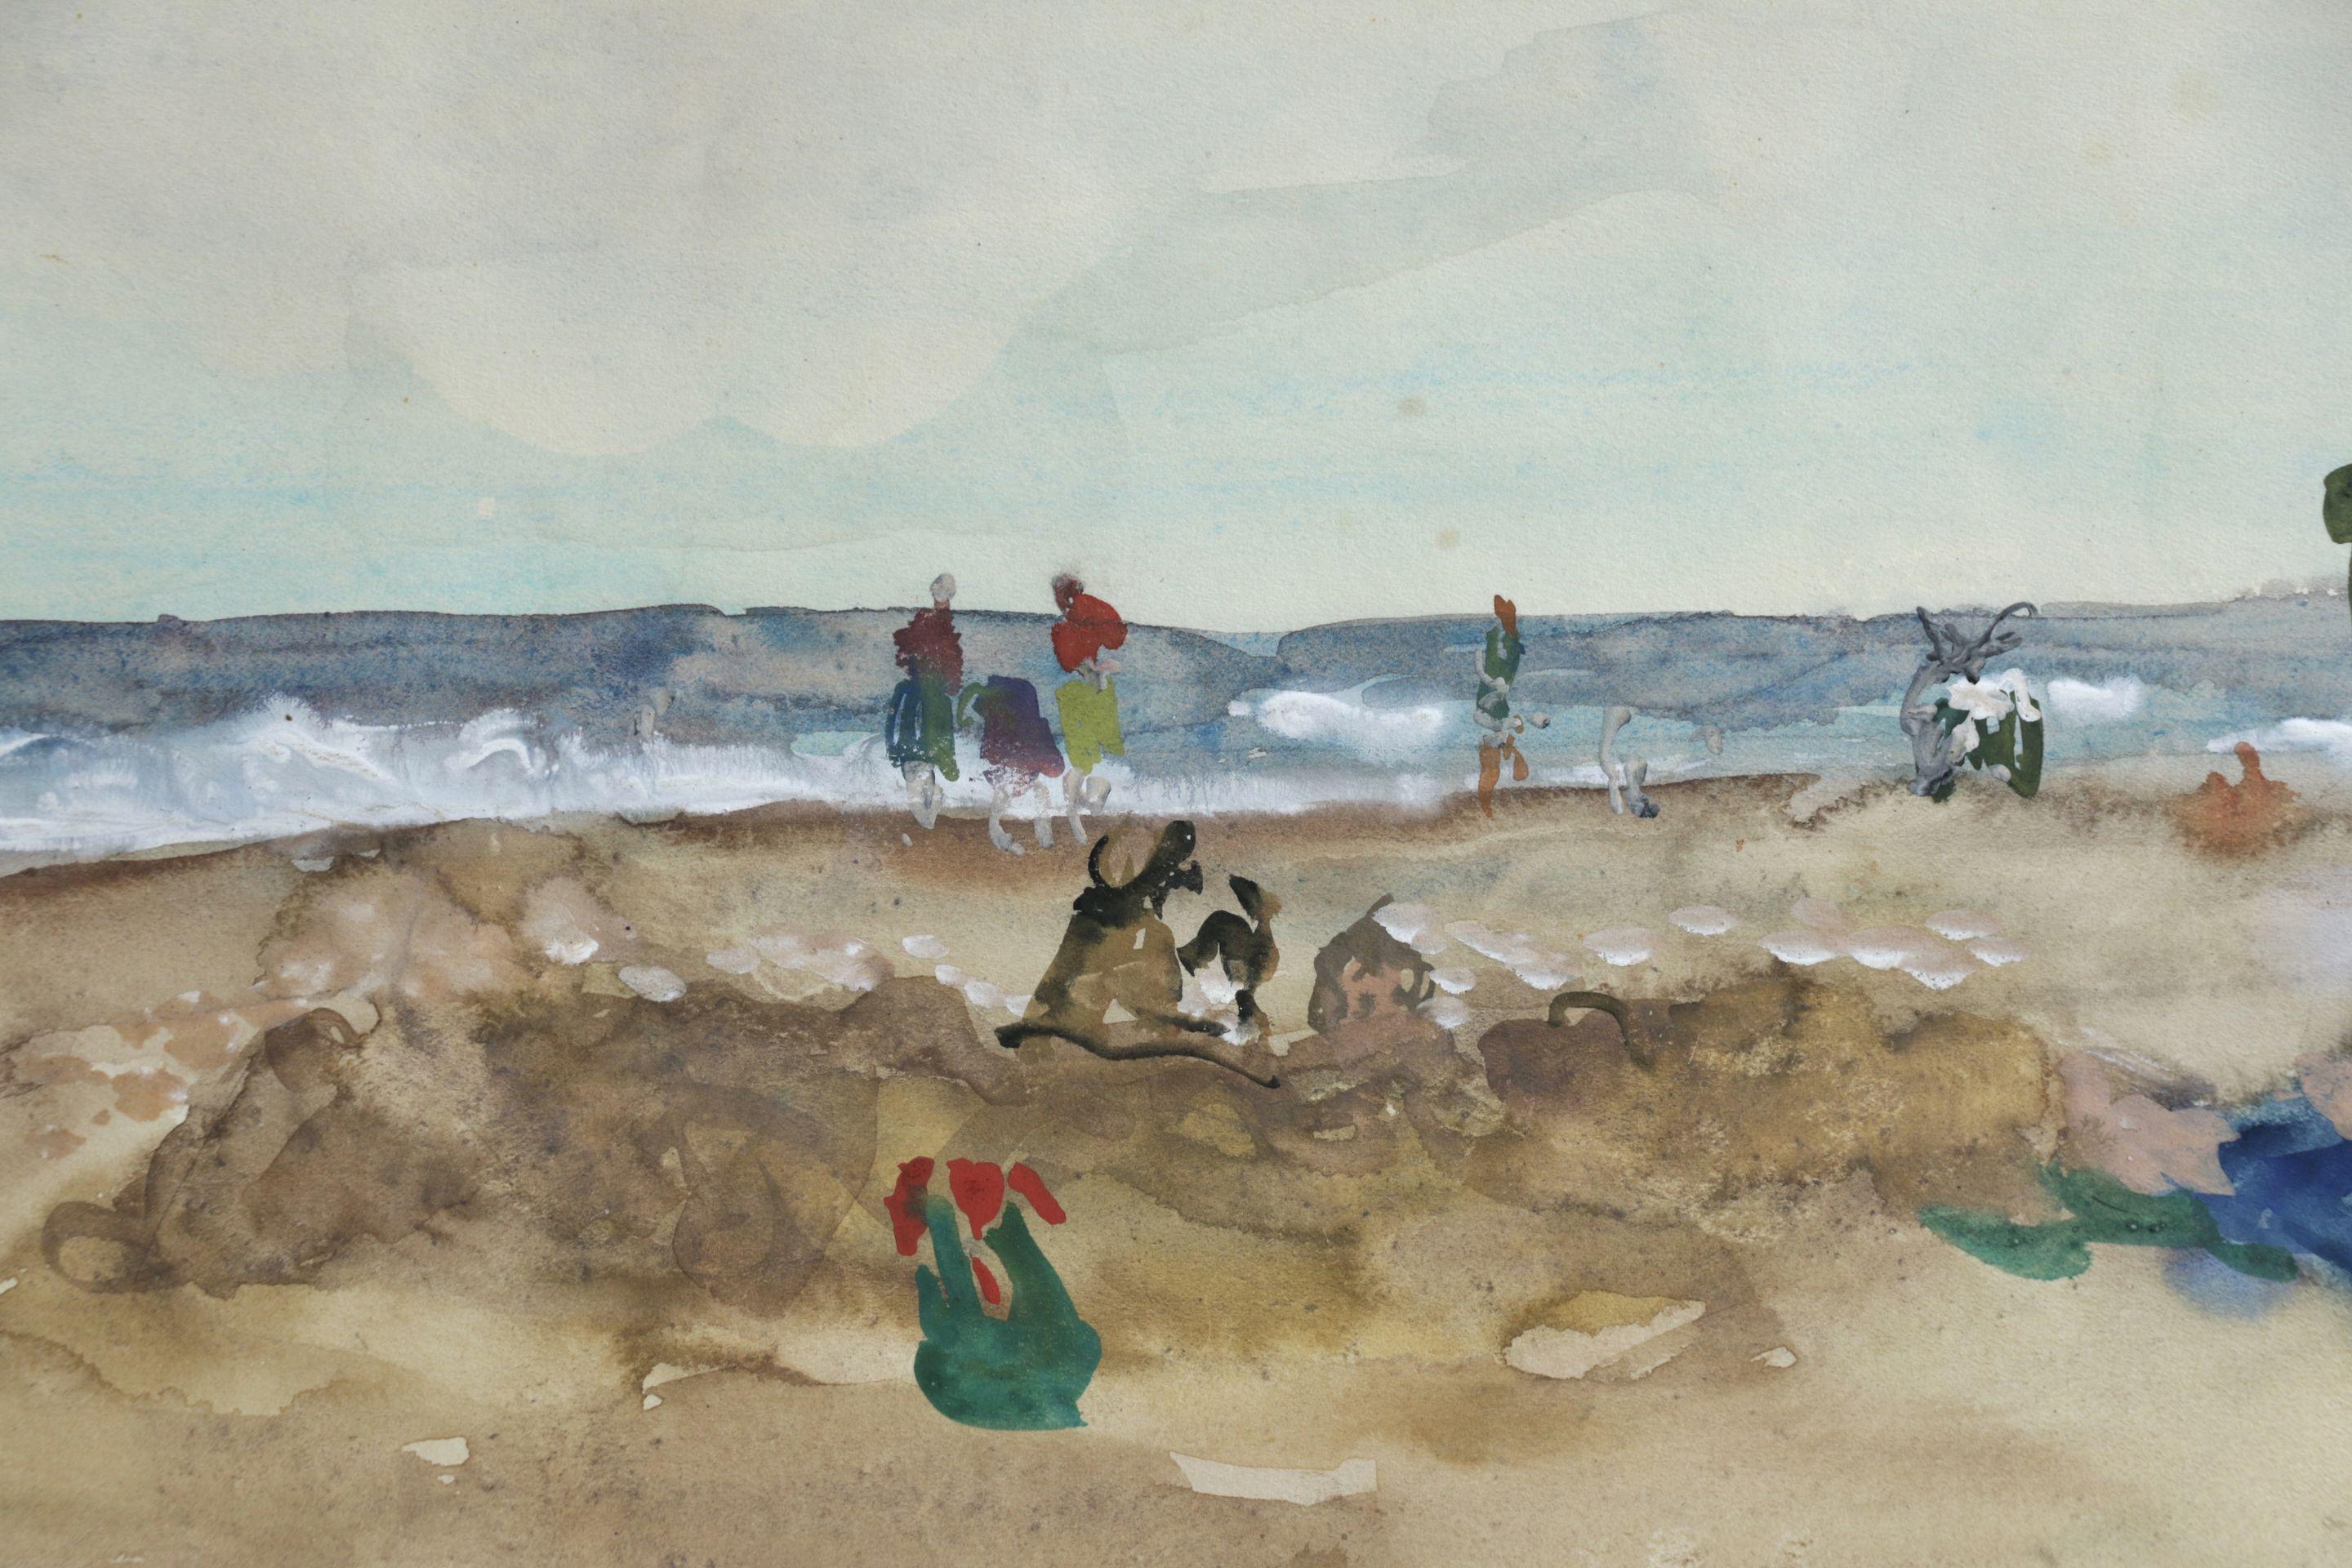 Elegantes sur la Plage - 20th Century Watercolor, Figures in Seascape by Gernez - Post-Impressionist Art by Paul-Élie Gernez